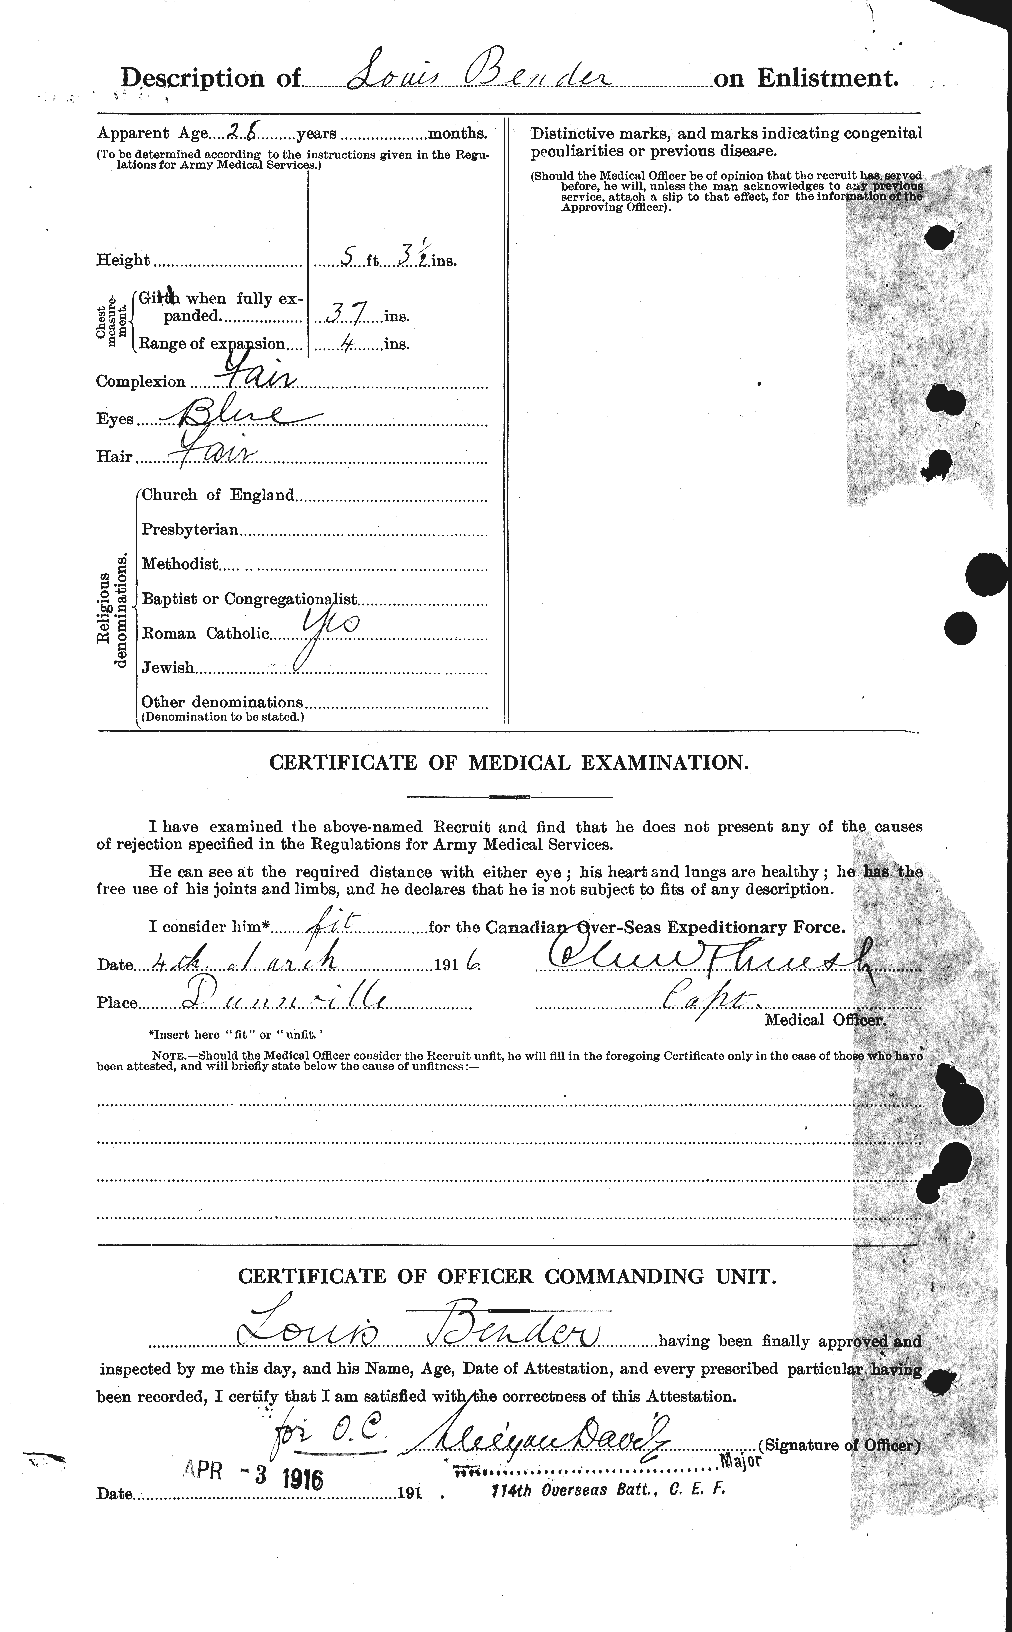 Dossiers du Personnel de la Première Guerre mondiale - CEC 235701b